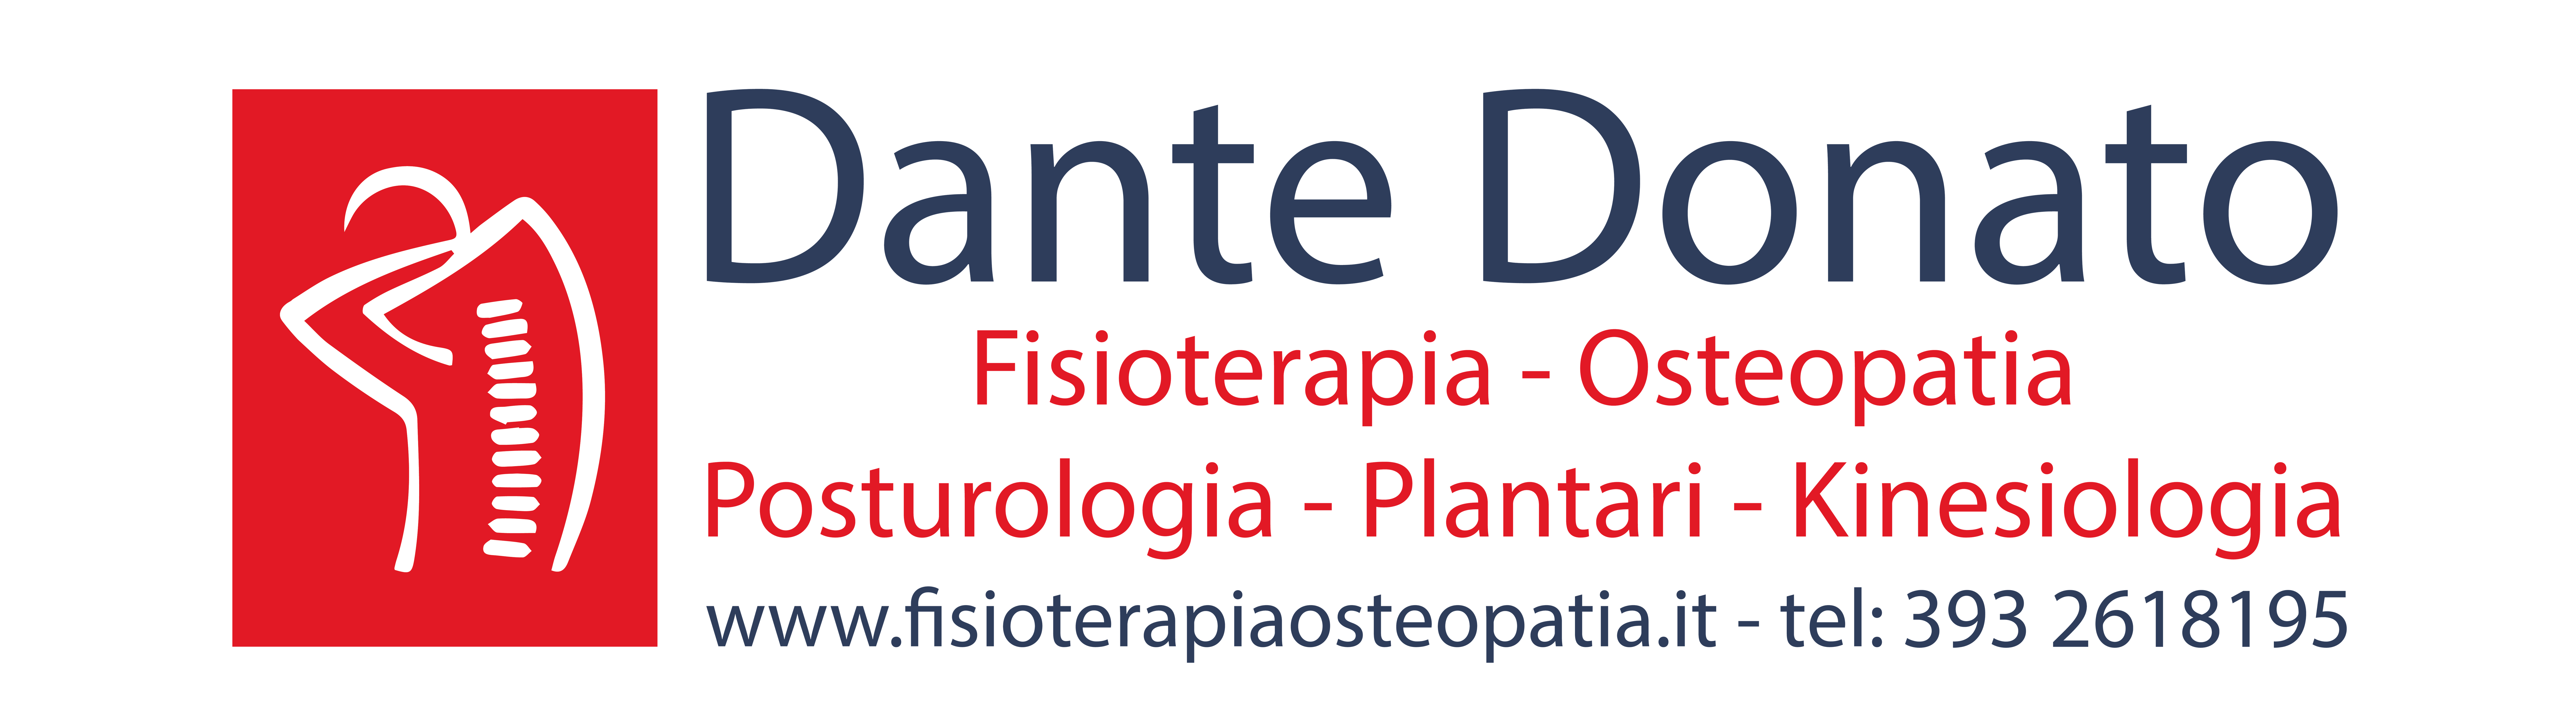 Dante Donato Fisioterapia Osteopatia